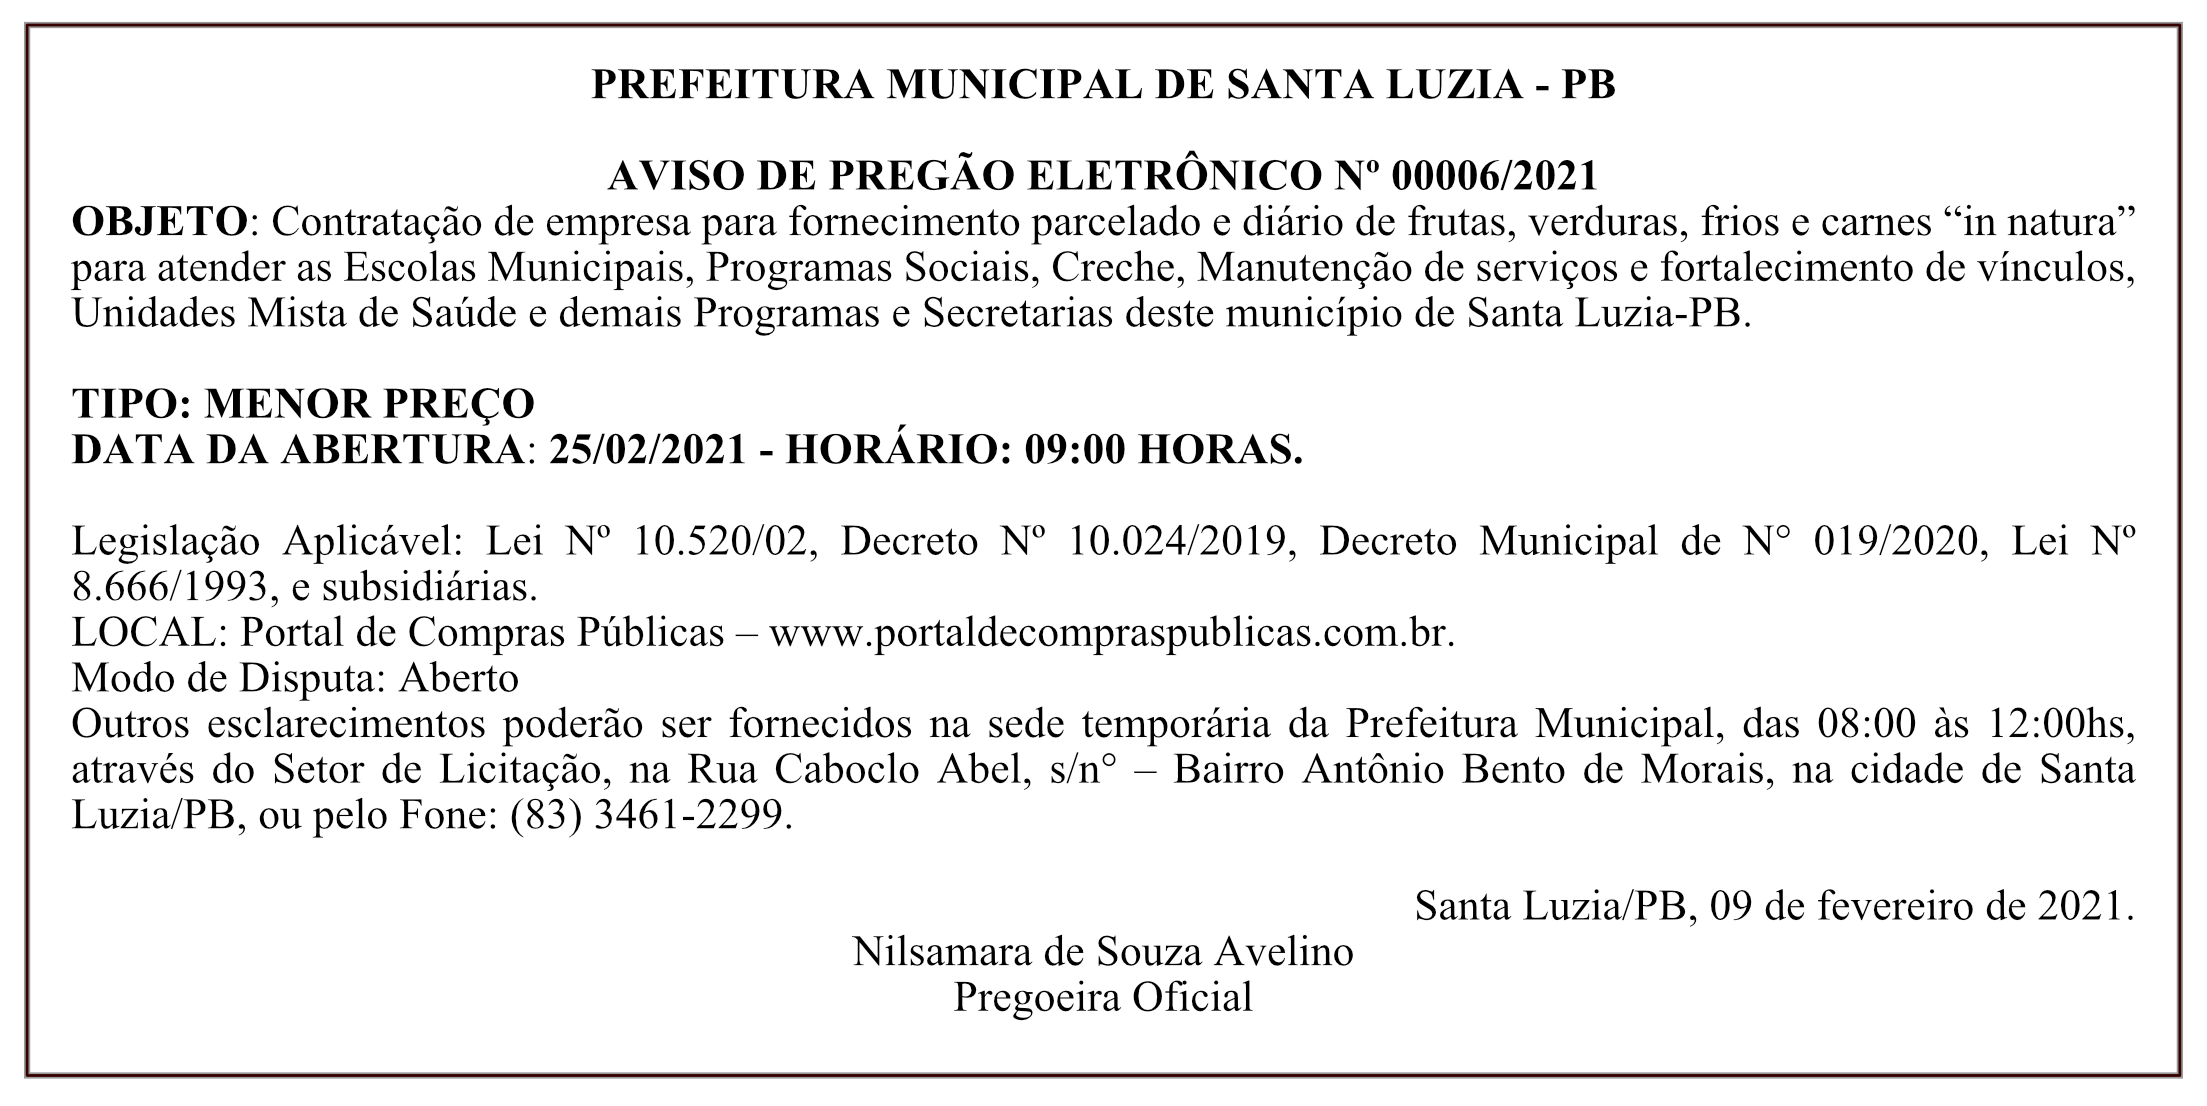 PREFEITURA MUNICIPAL DE SANTA LUZIA – AVISO DE PREGÃO ELETRÔNICO Nº 00006/2021